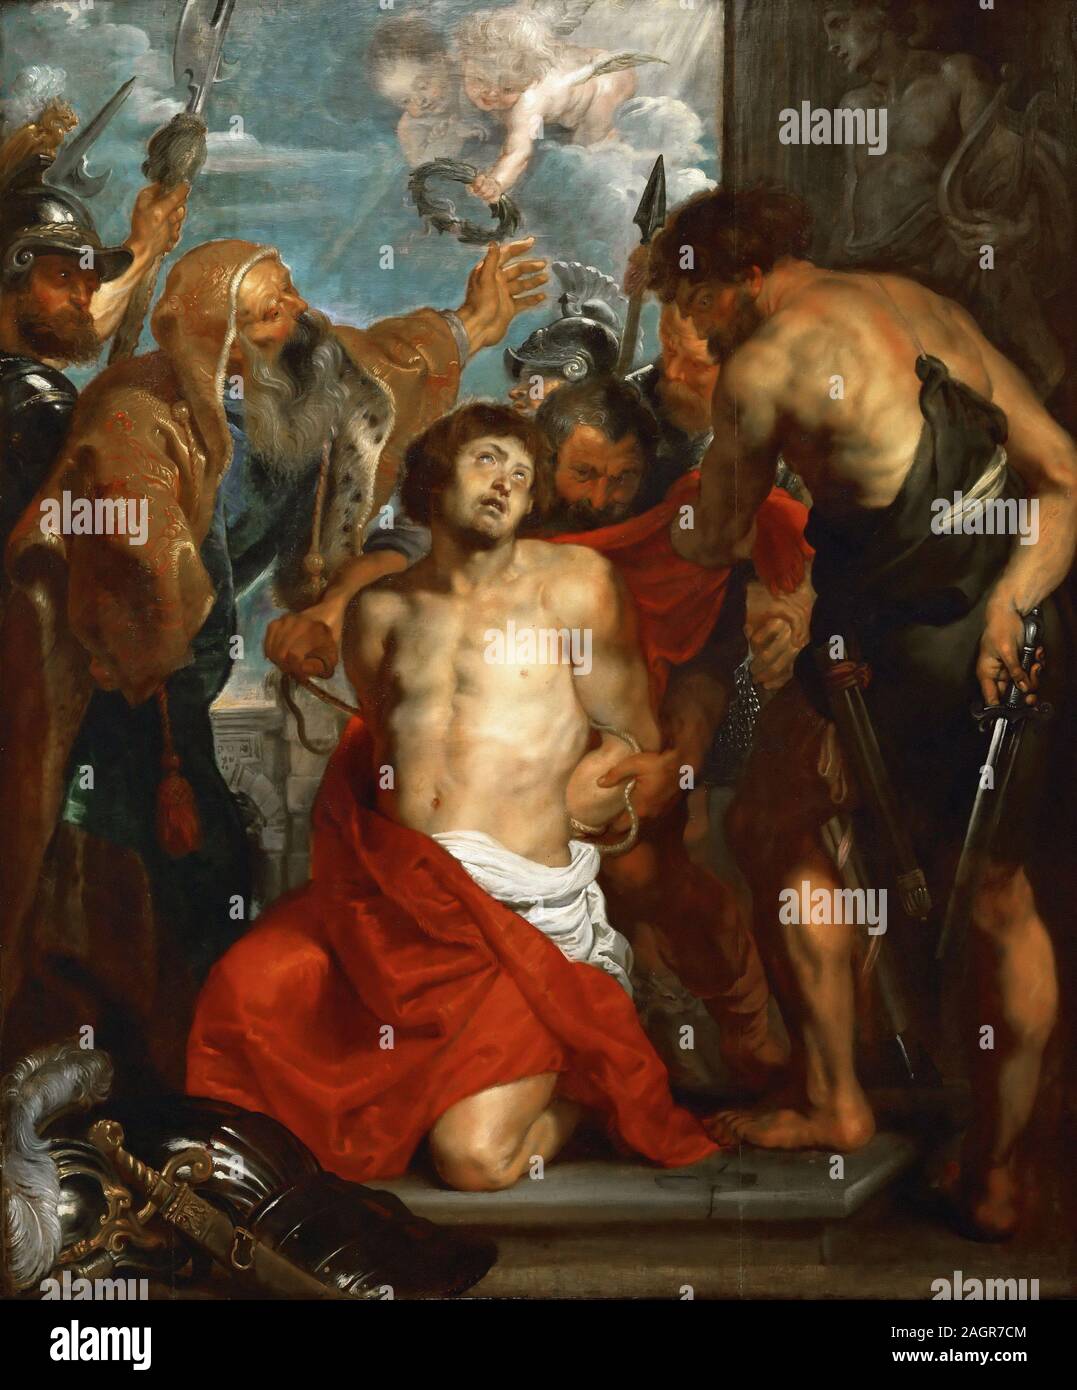 Martyrdom of Saint George. Museum: Musée des Beaux-Arts, Bordeaux. Author: Pieter Paul Rubens. Stock Photo